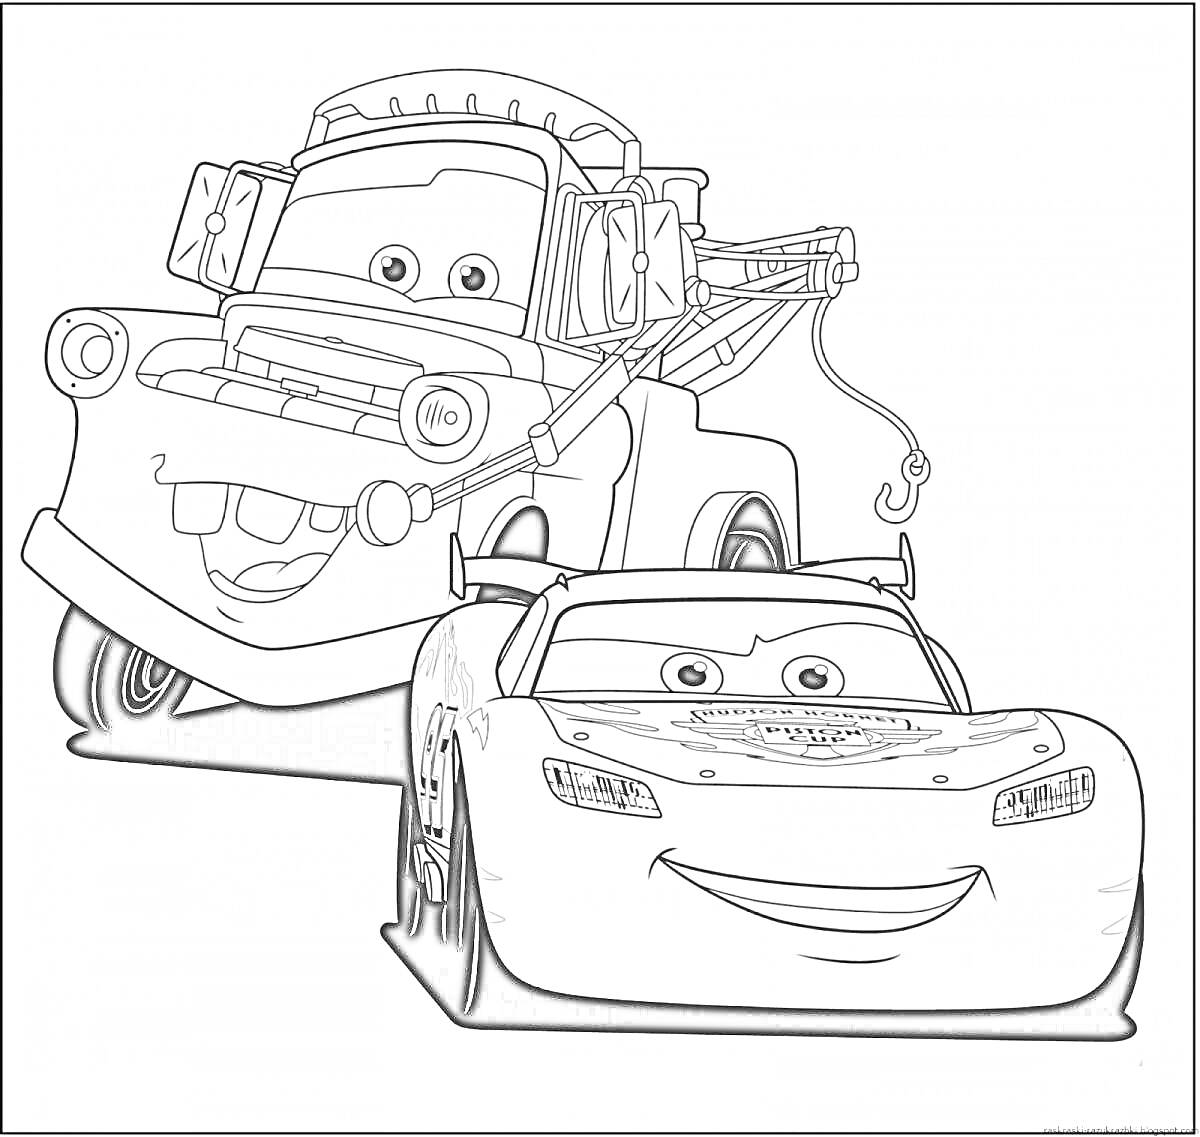 Раскраска Раскраска с персонажами: эвакуатор и гоночный автомобиль с глазами, улыбками и деталями на капоте